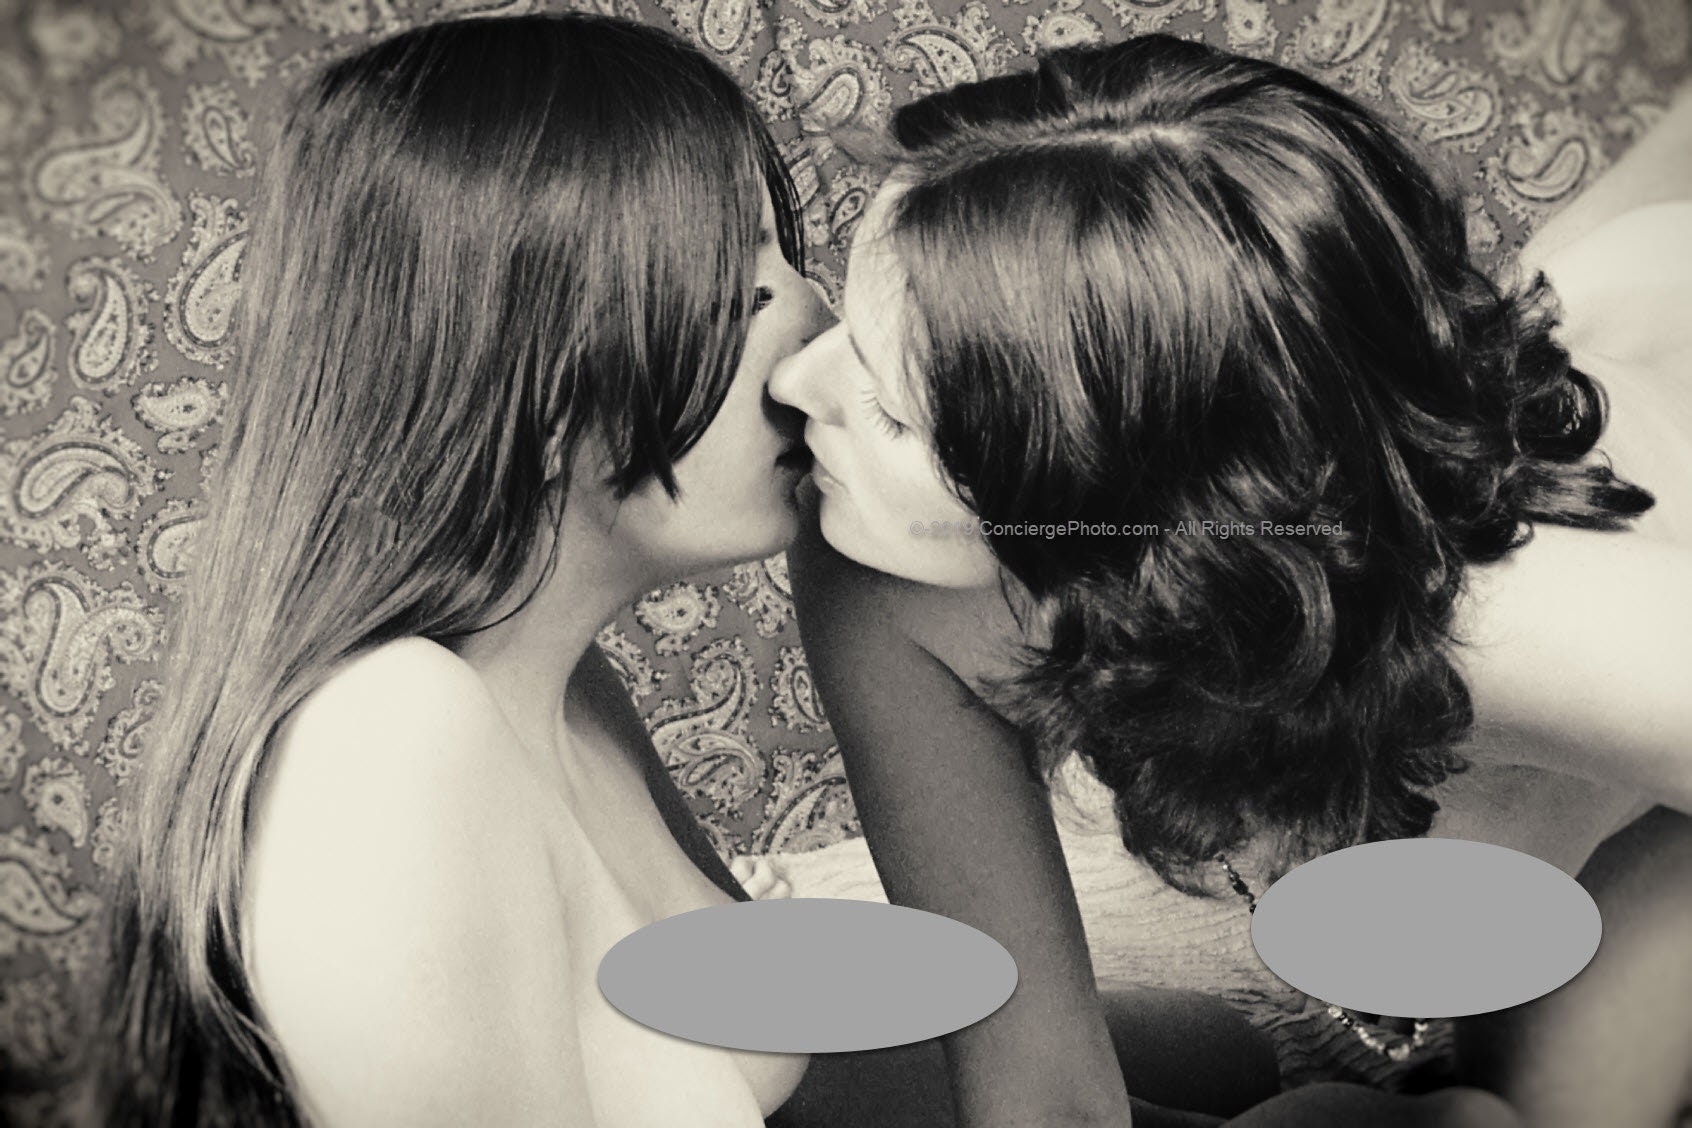 Vintage Mature 1970s Risque Photo 8x12 Bisexual Lesbian Couple - Etsy